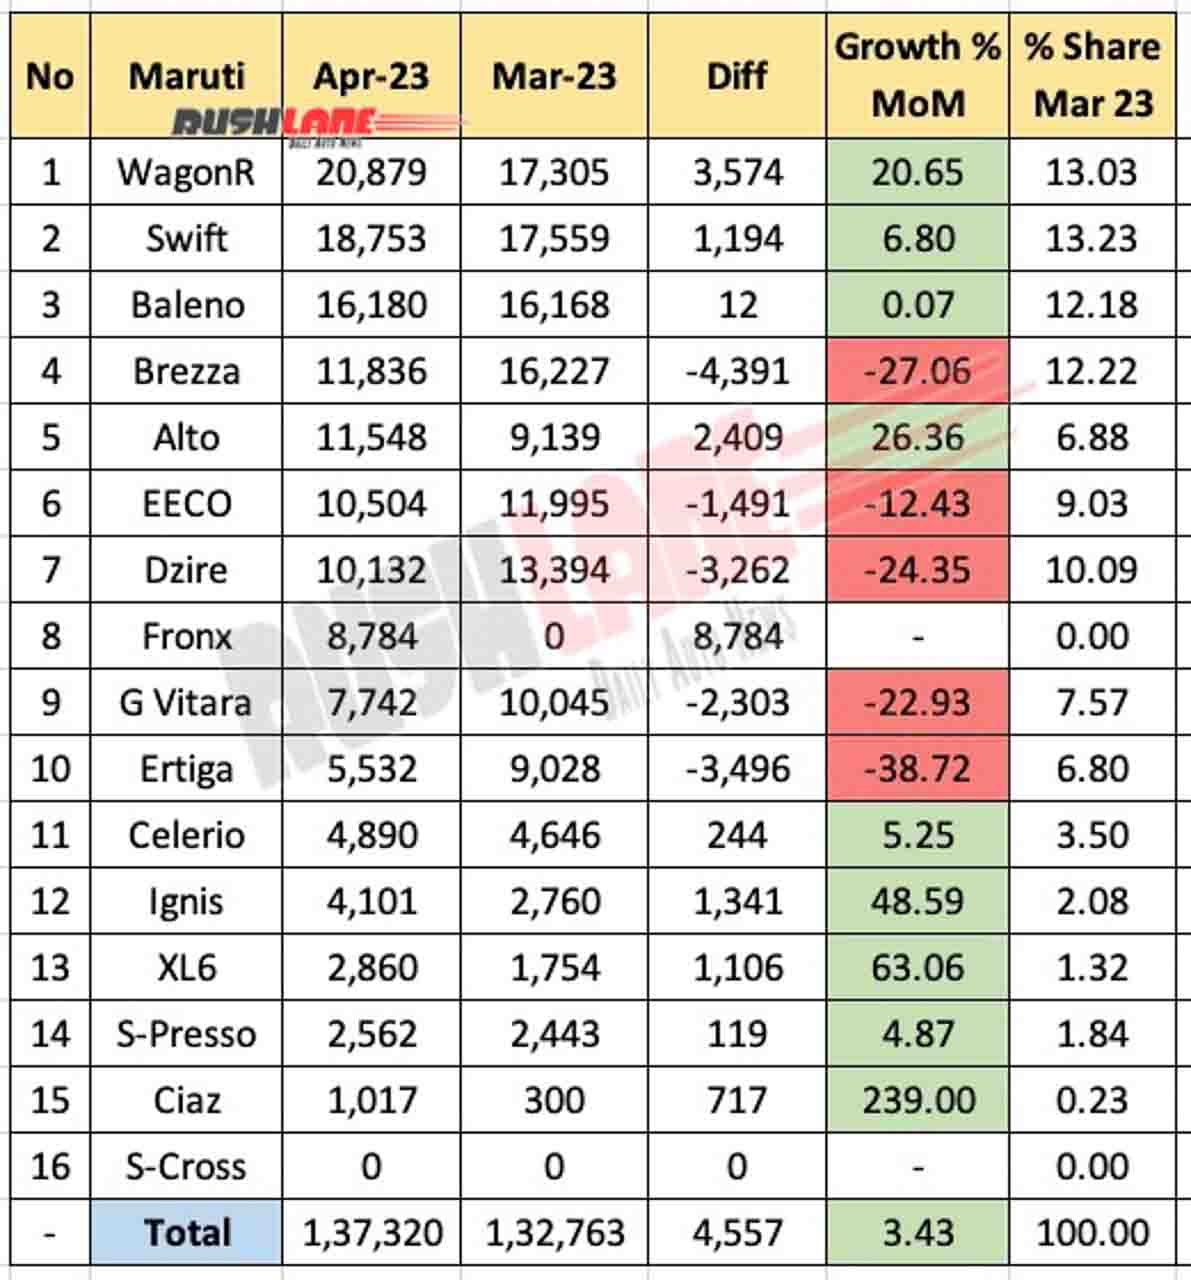 Maruti Sales Breakup April 2023 vs March 2023 - MoM analysis